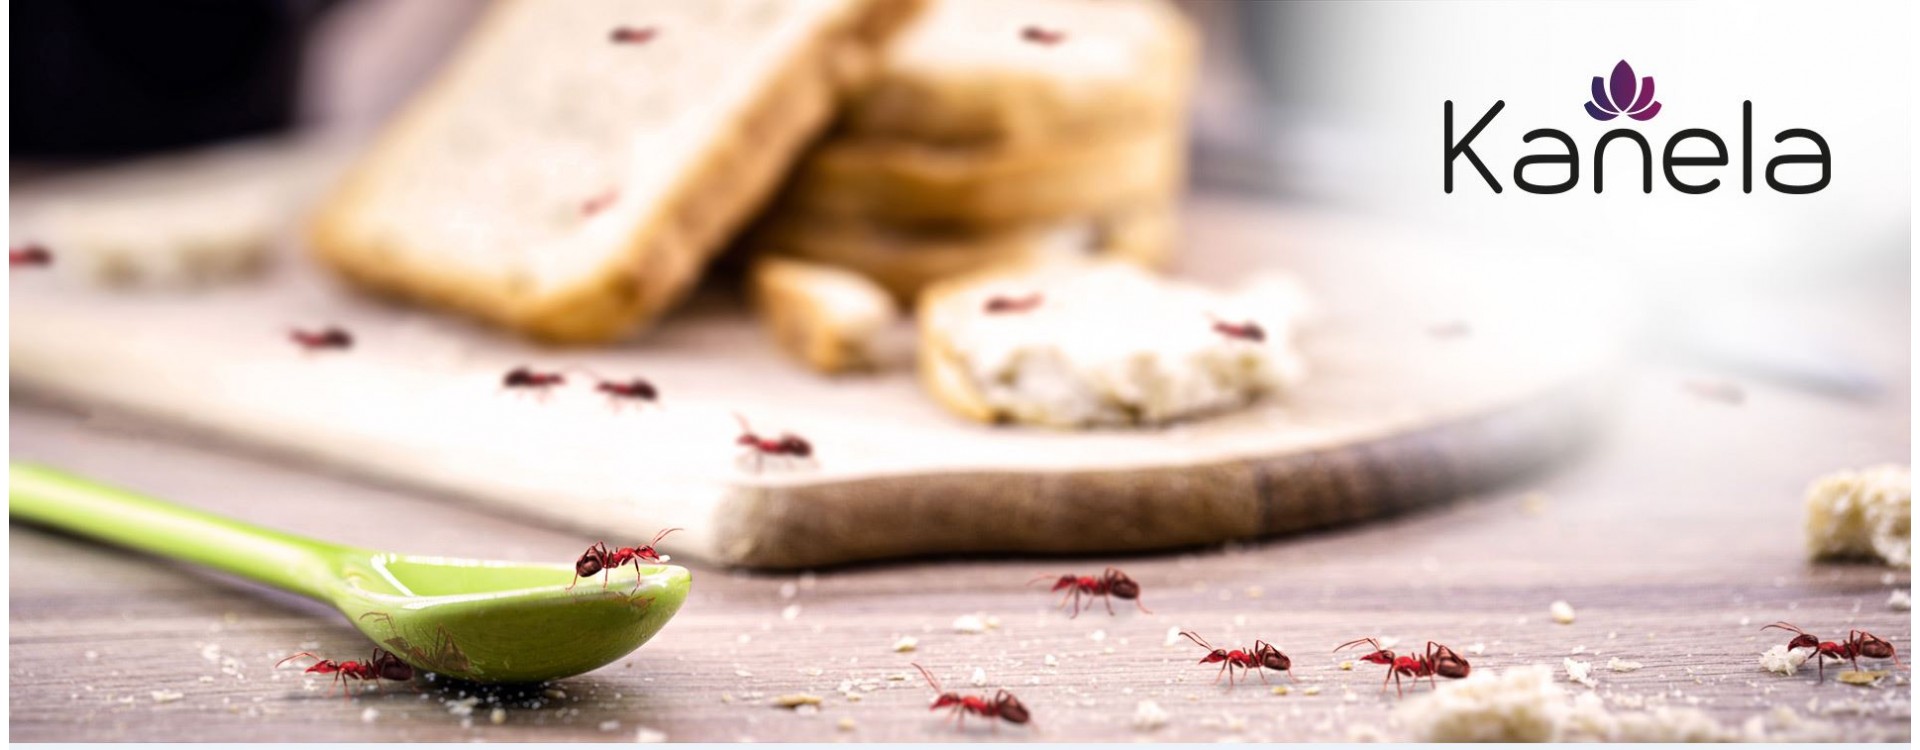 Cosa puoi fare contro le formiche?